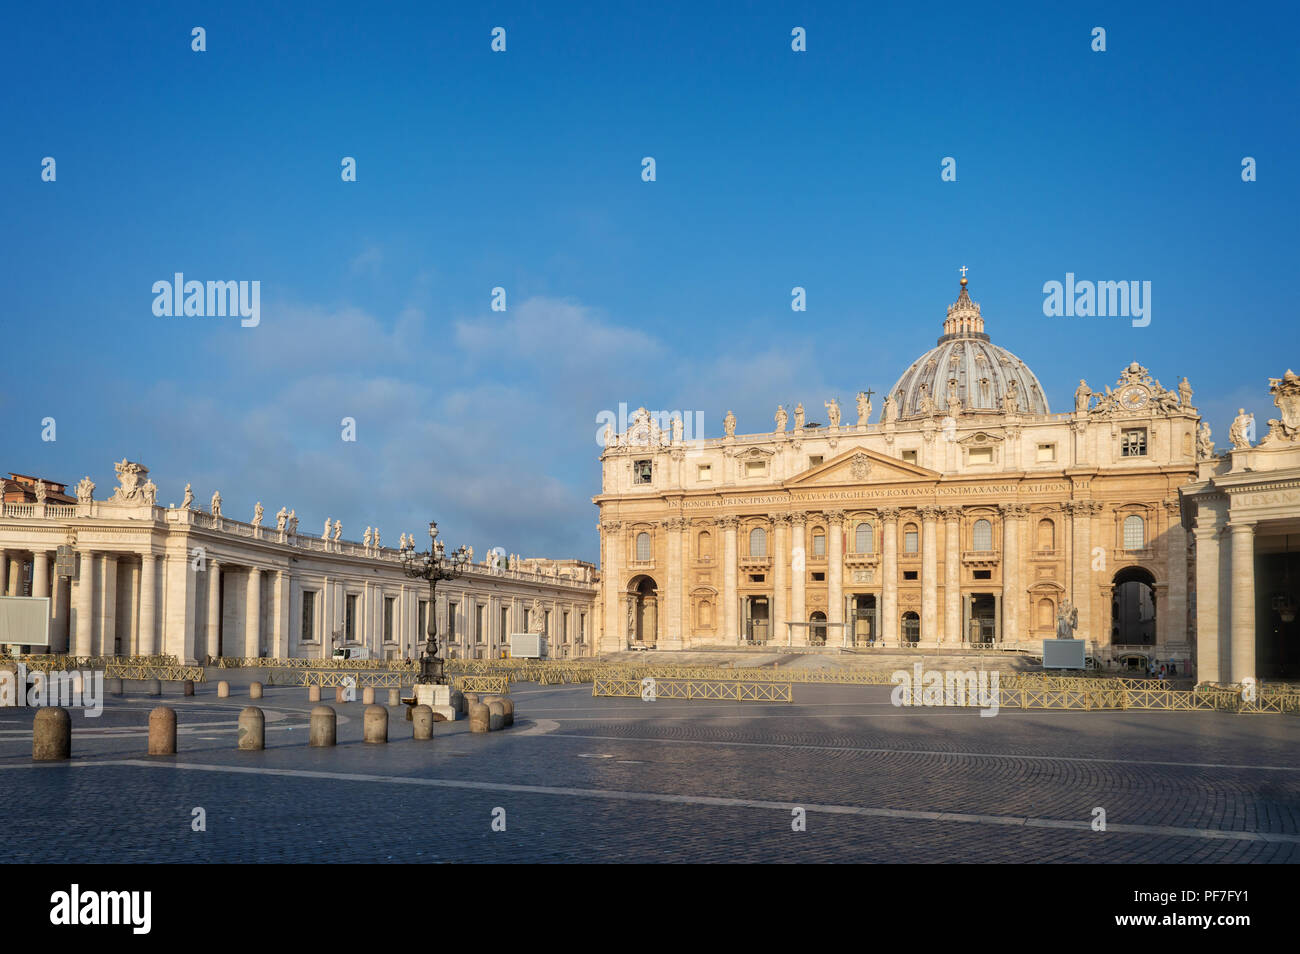 La basilique Saint Pierre sur la place Saint-Pierre dans la Cité du Vatican, Rome, Italie Banque D'Images